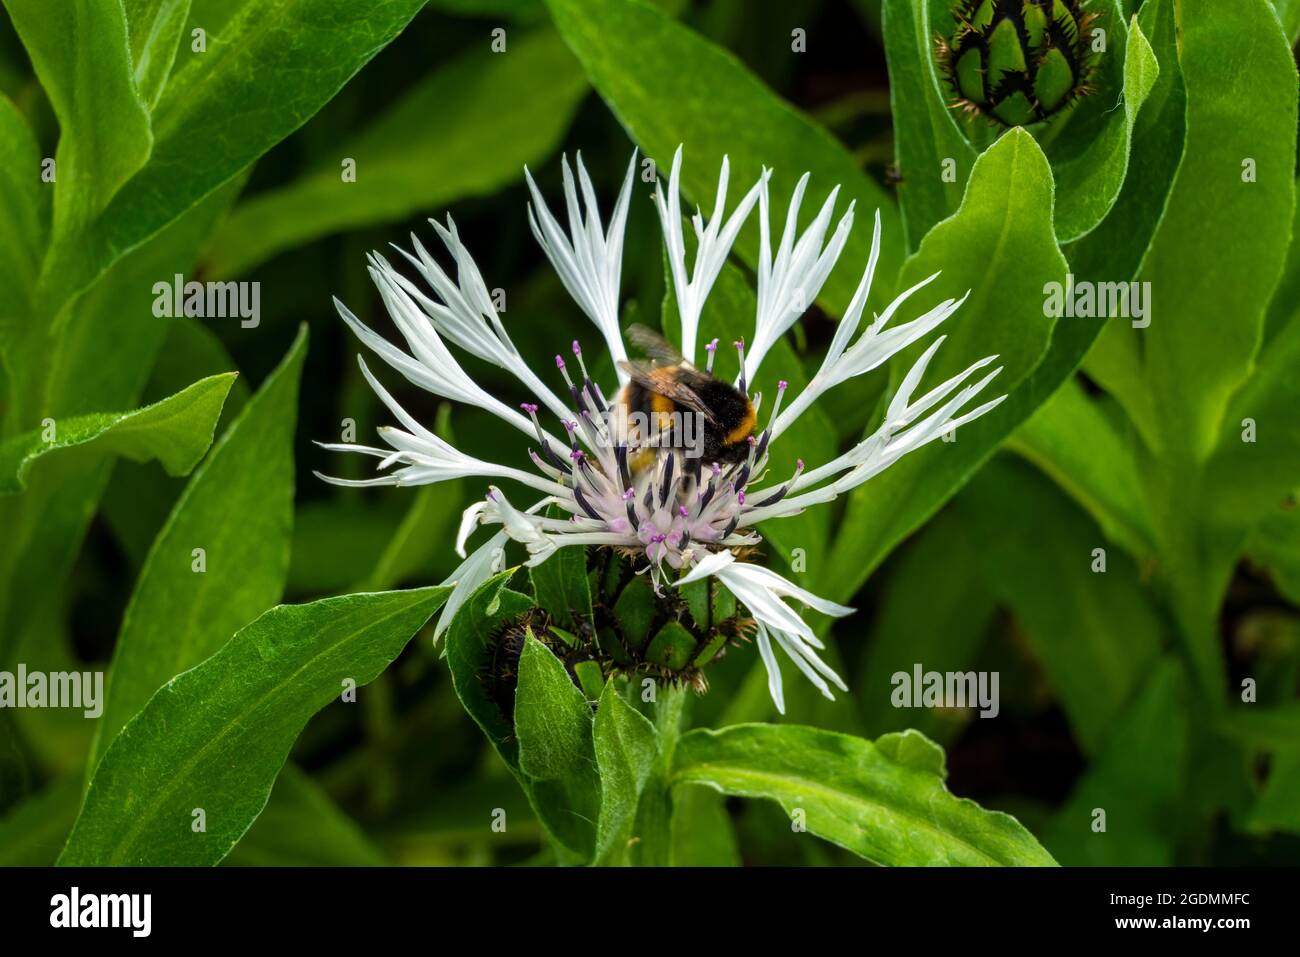 Centaurea montana 'Alaba' eine Sommer blühende Pflanze mit einer zerlumpten, blühenden Sommerblume, die allgemein als weiße, mehrjährige Kornblume mit Hummel bekannt ist Stockfoto